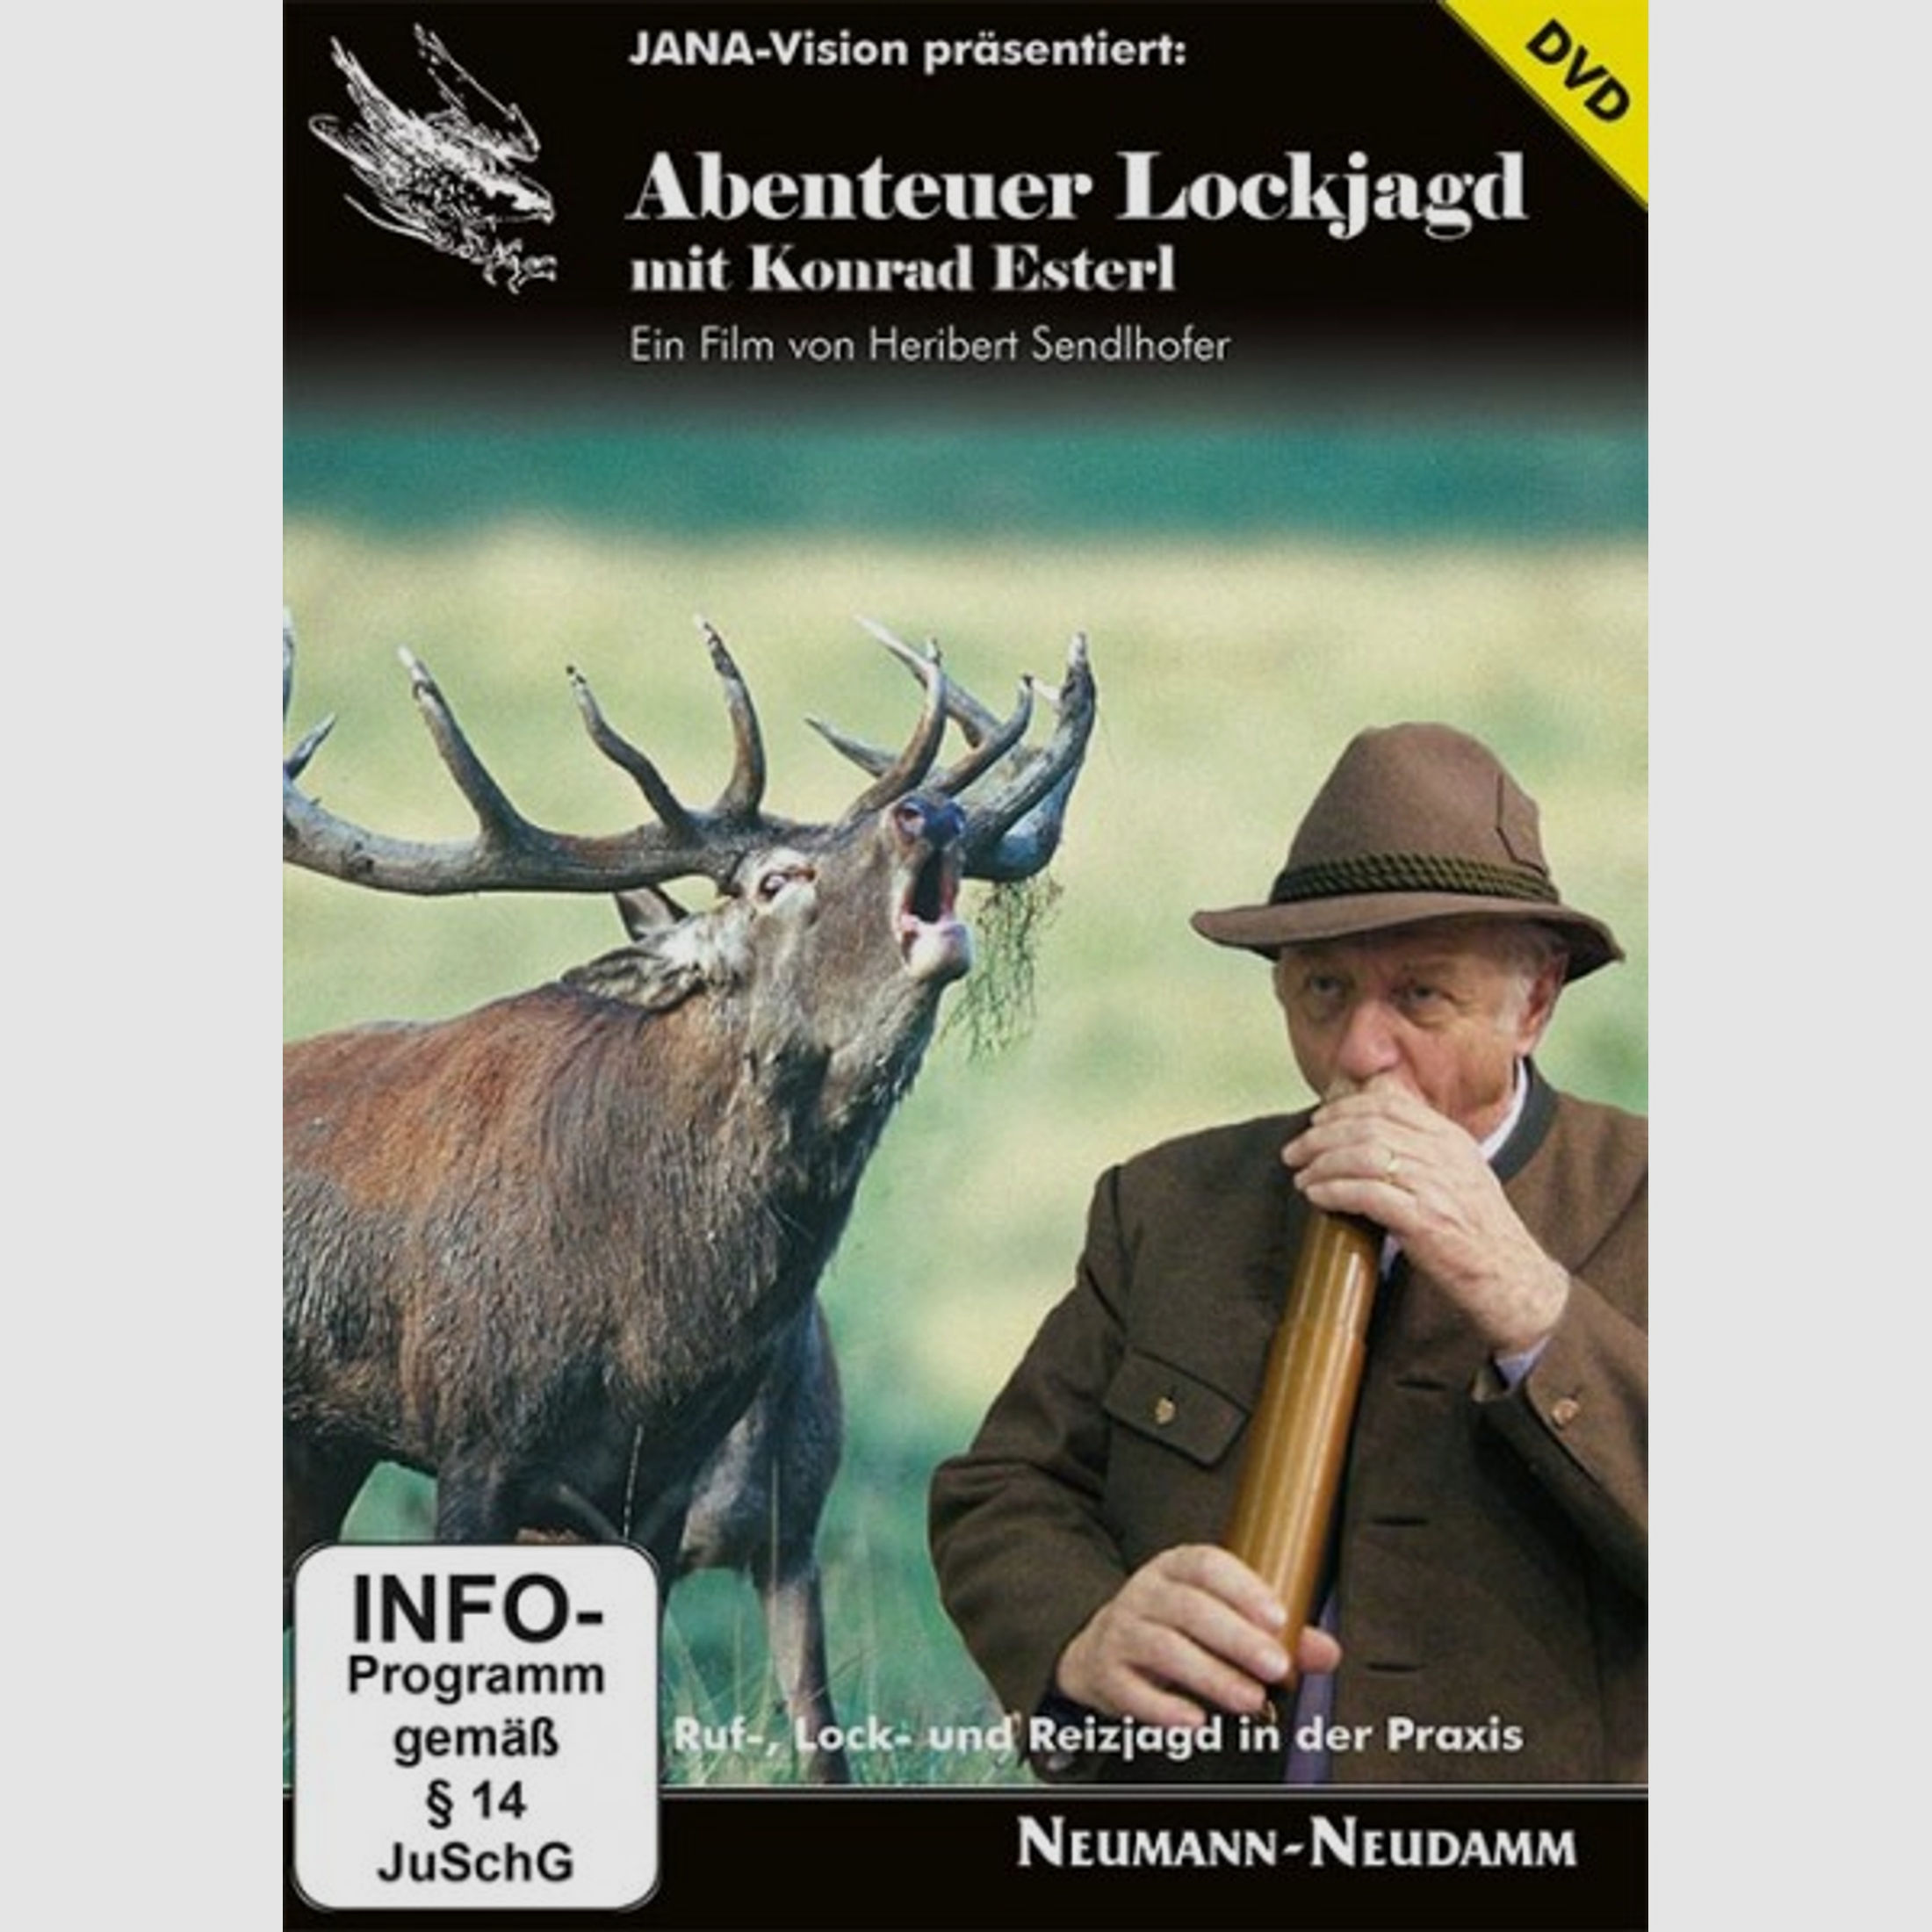 Esterl/Sendlhofer, Abenteuer Lockjagd DVD